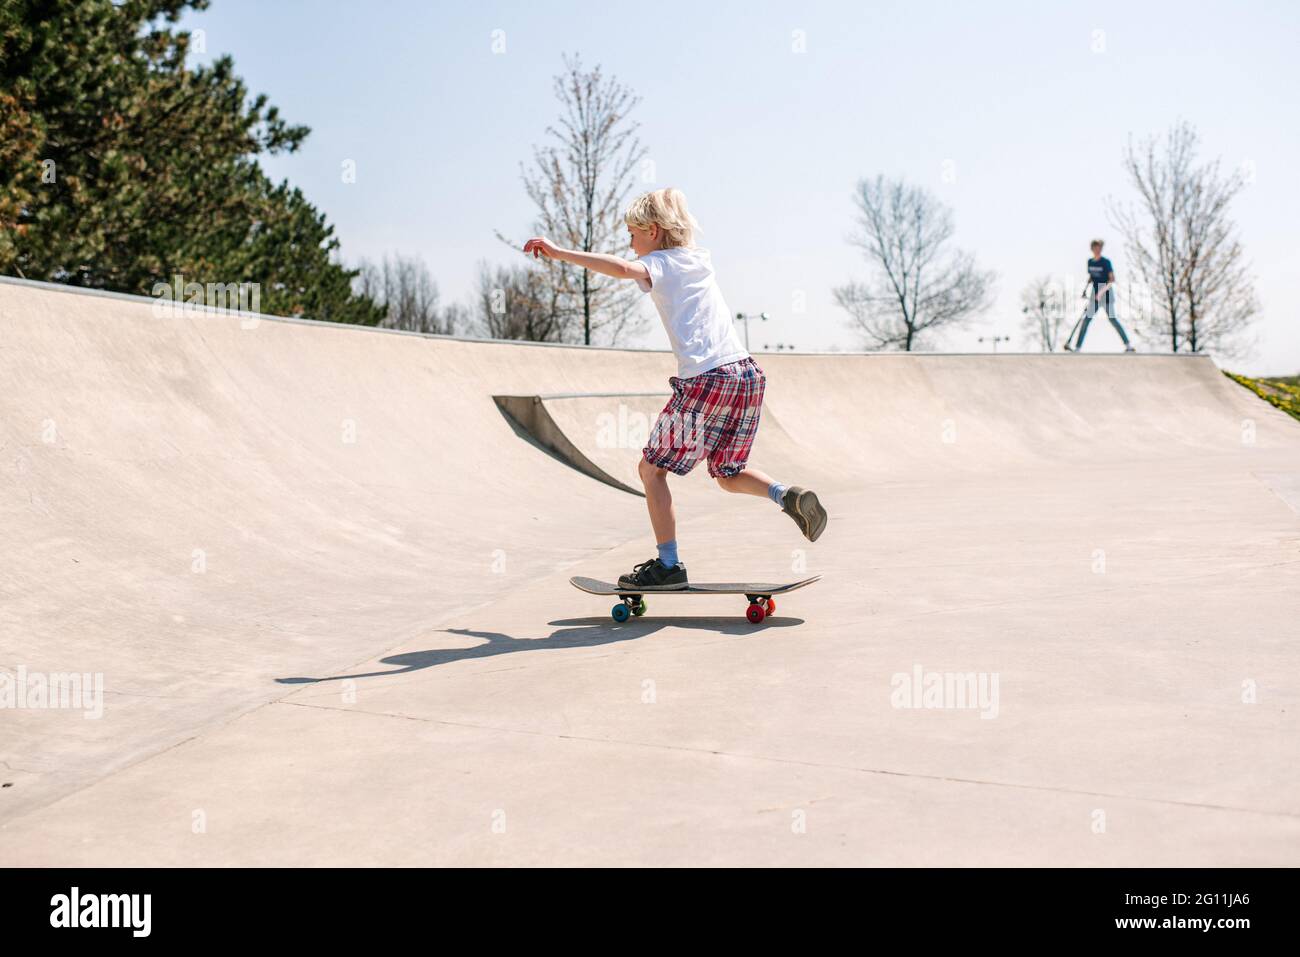 Canada, Ontario, Kingston, Boy skateboarding in skate park Stock Photo